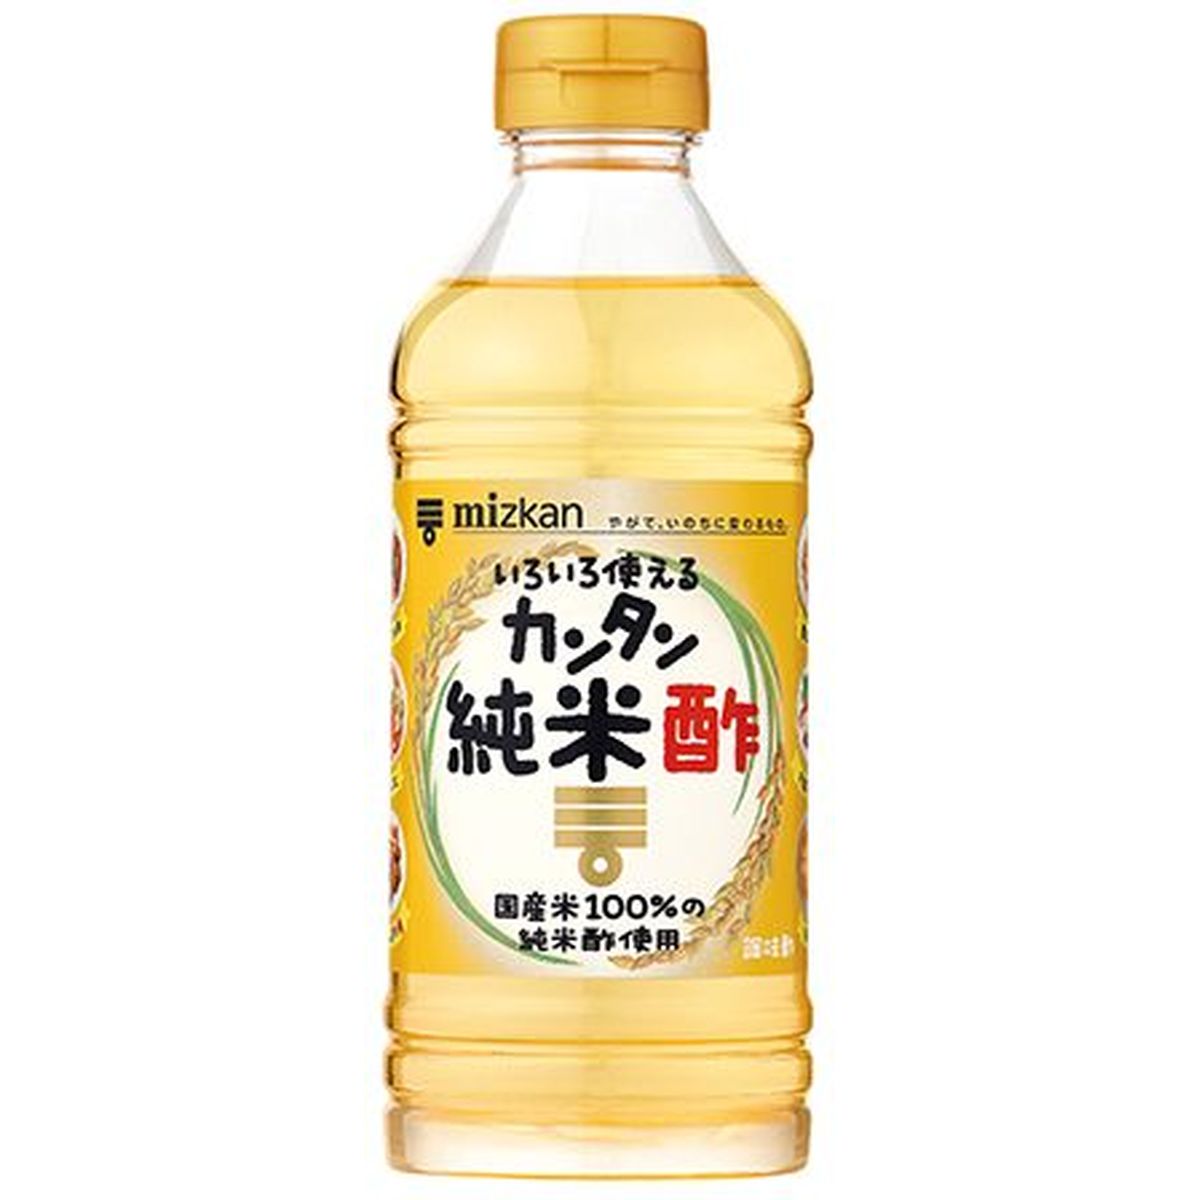 【12個入リ】ミツカン カンタン純米酢 500ml